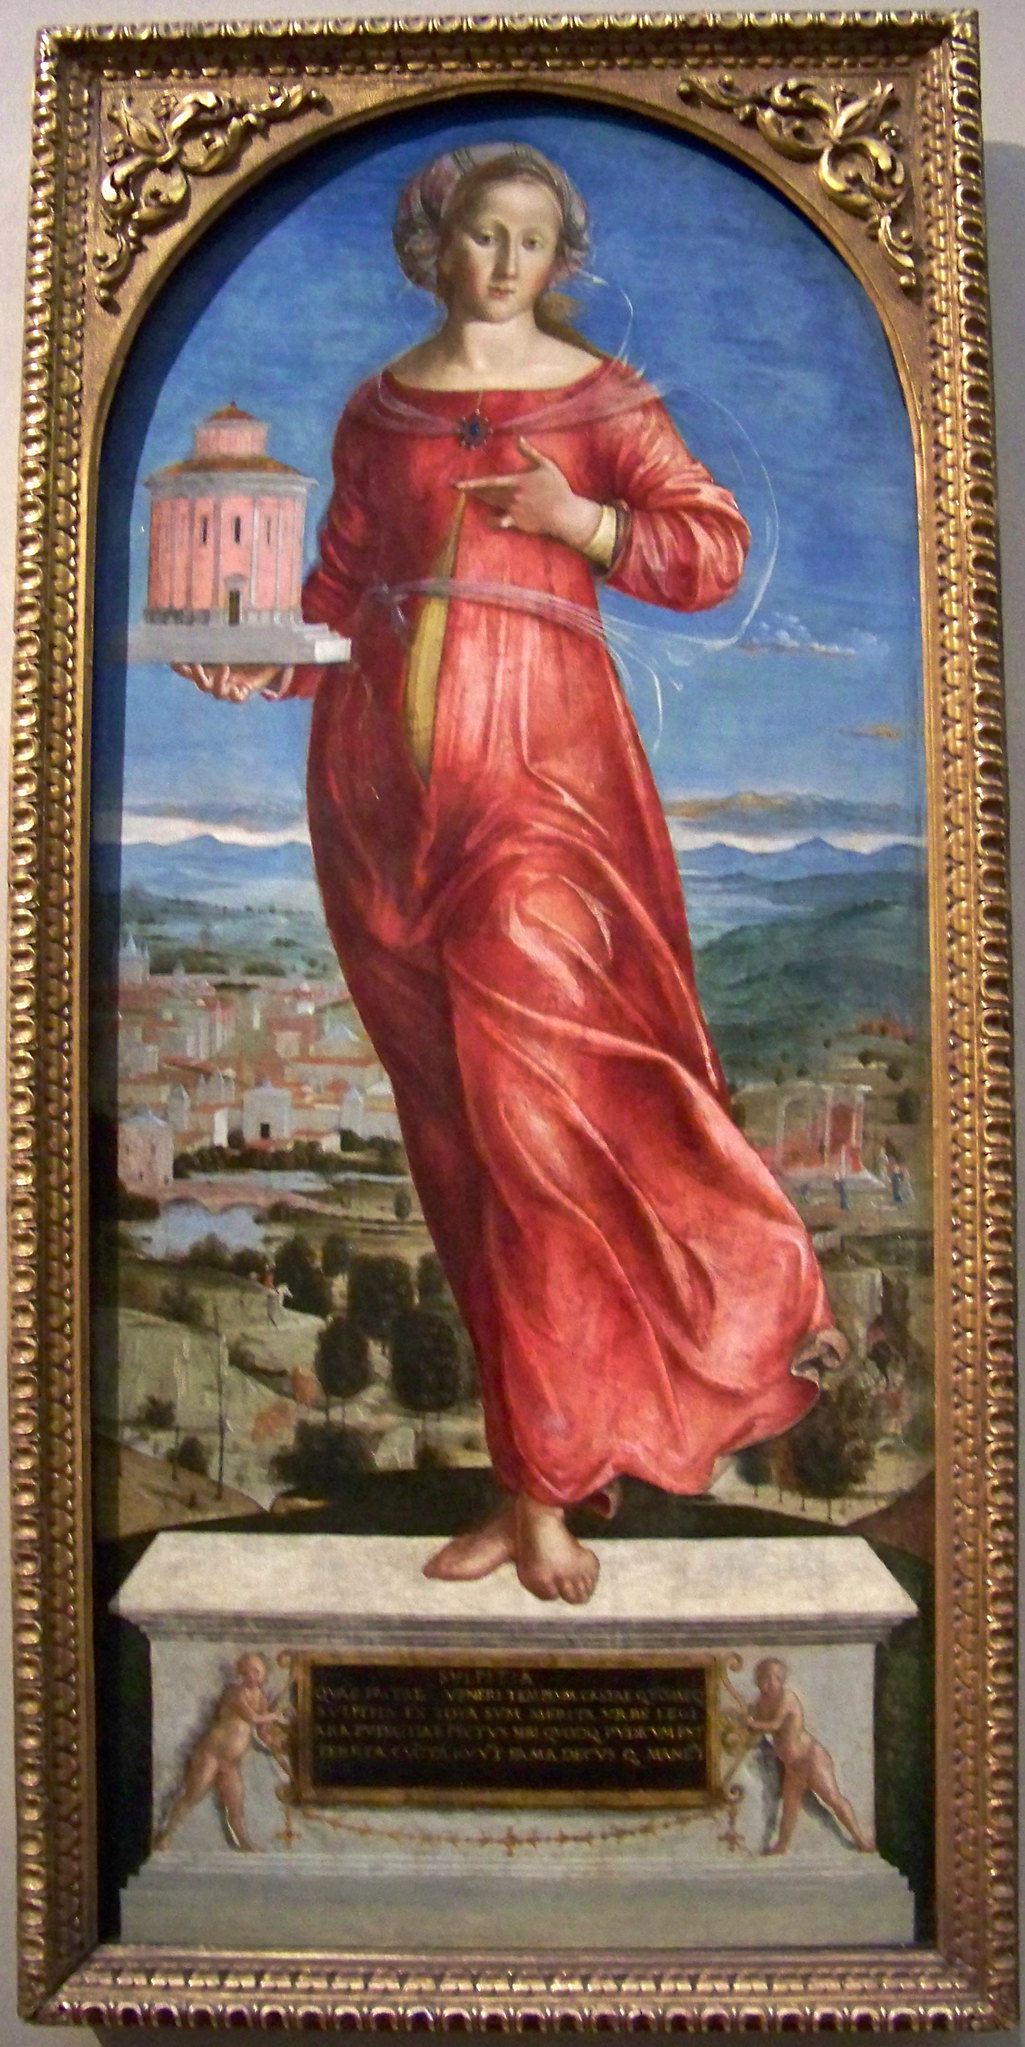 Sulpicia reneszánsz-kori ábrázolása (fotó: flickr)